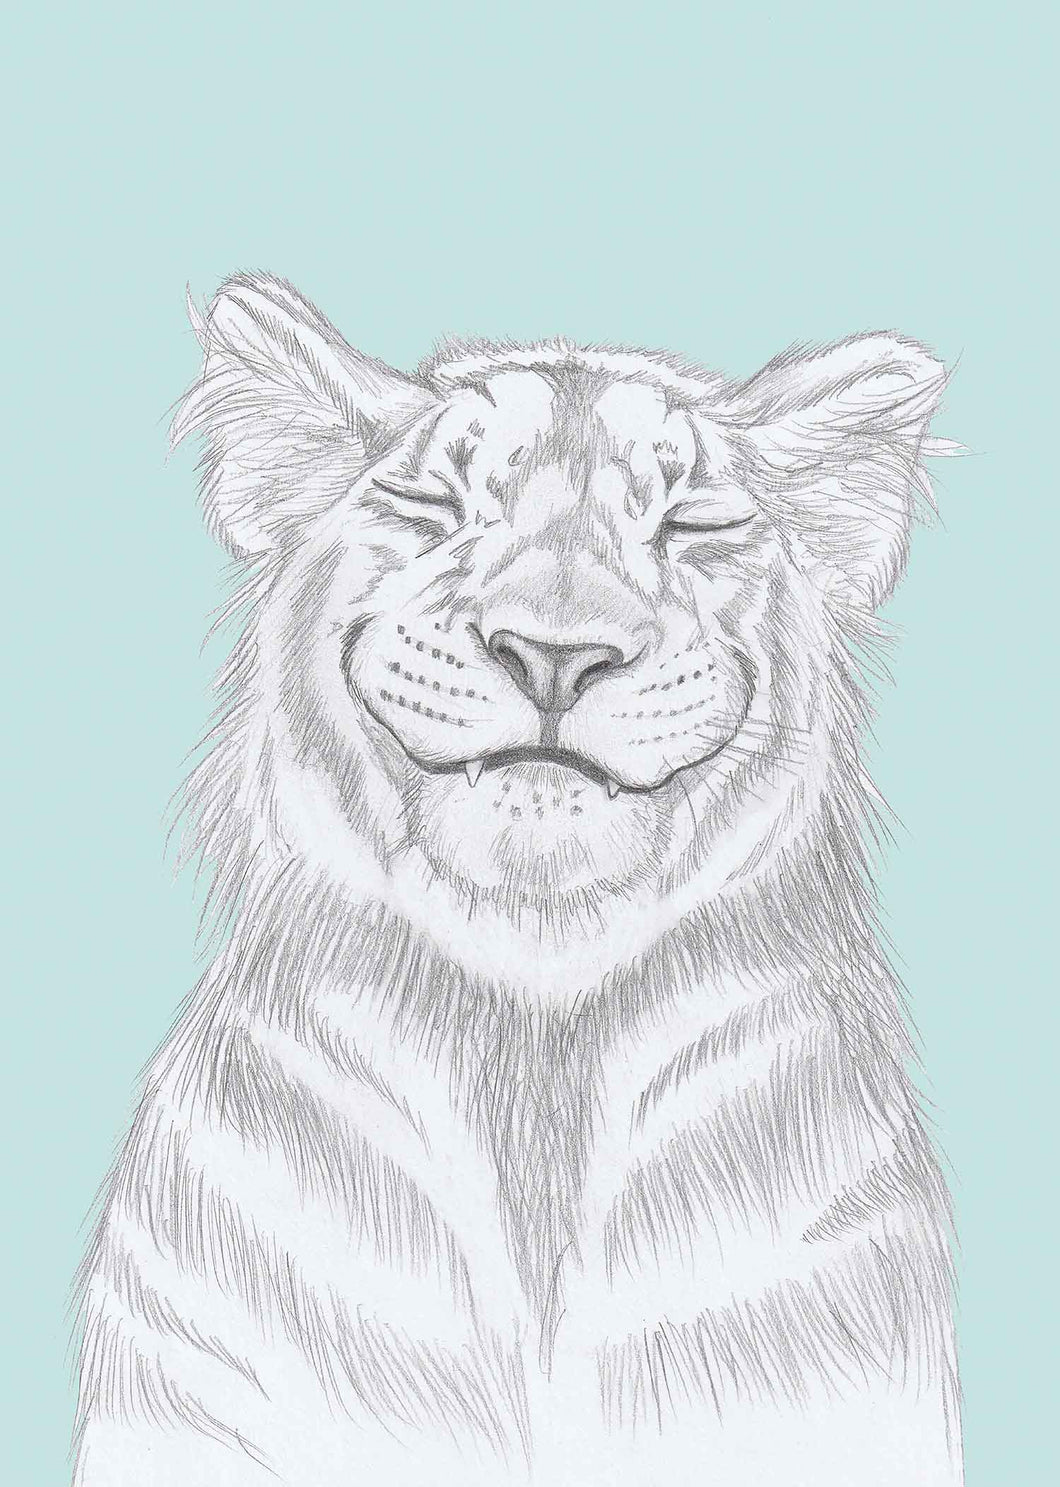 smiling tiger